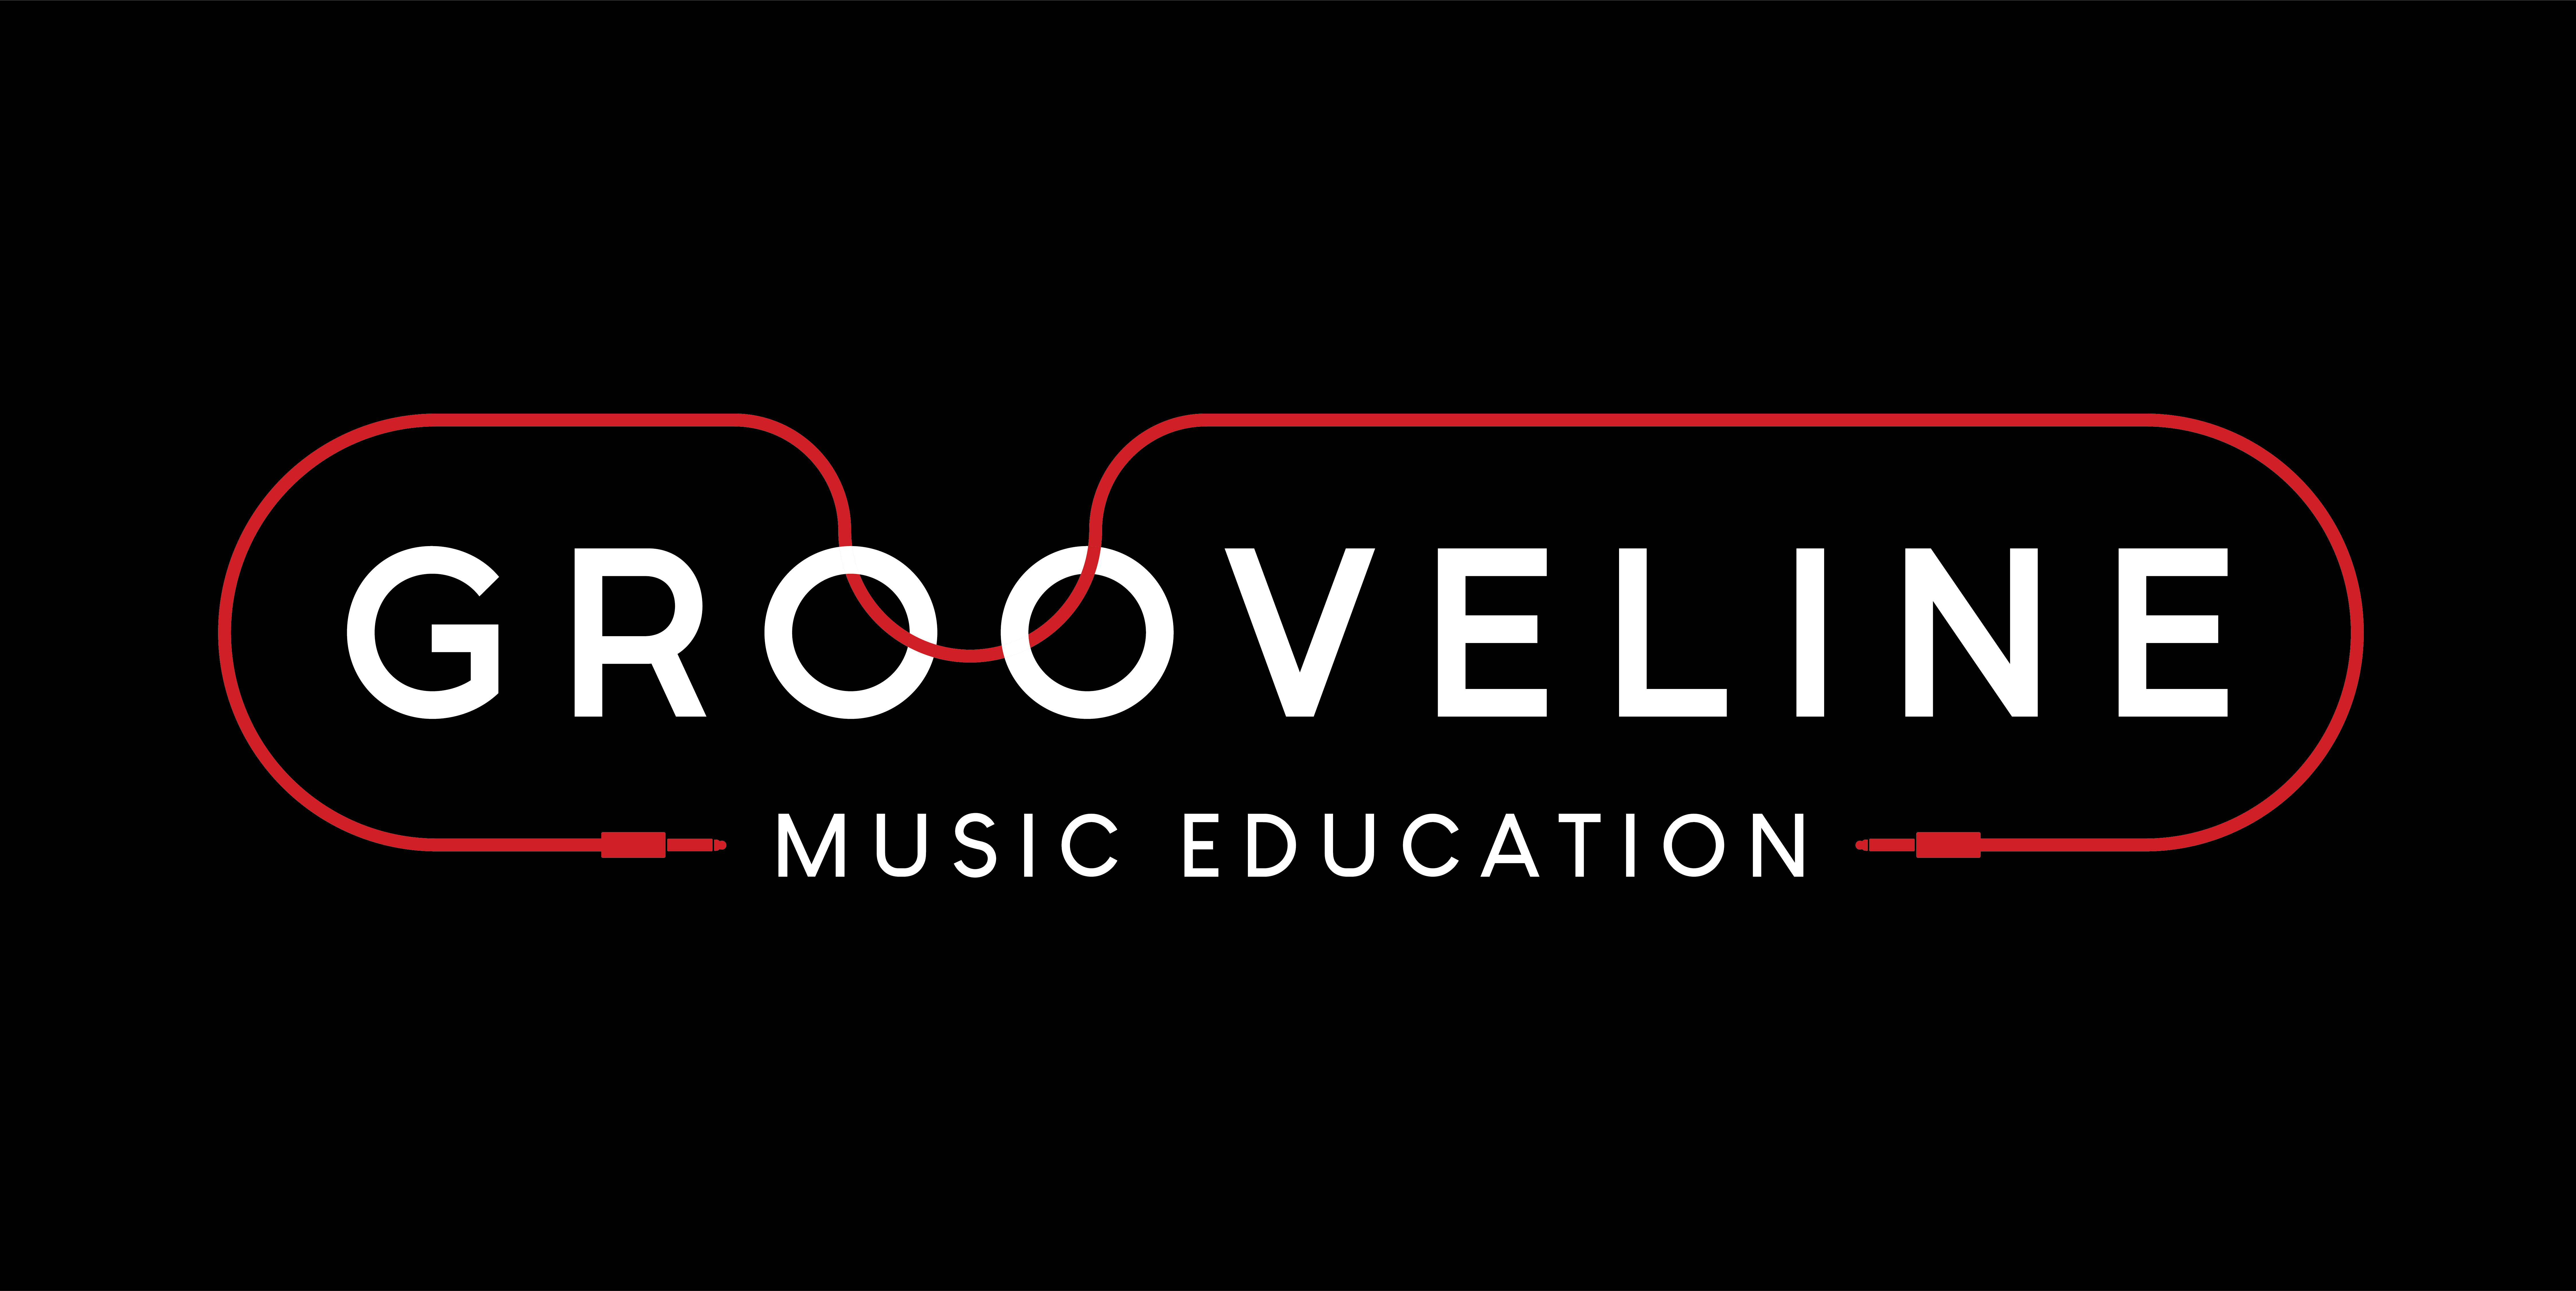 Grooveline Music Education